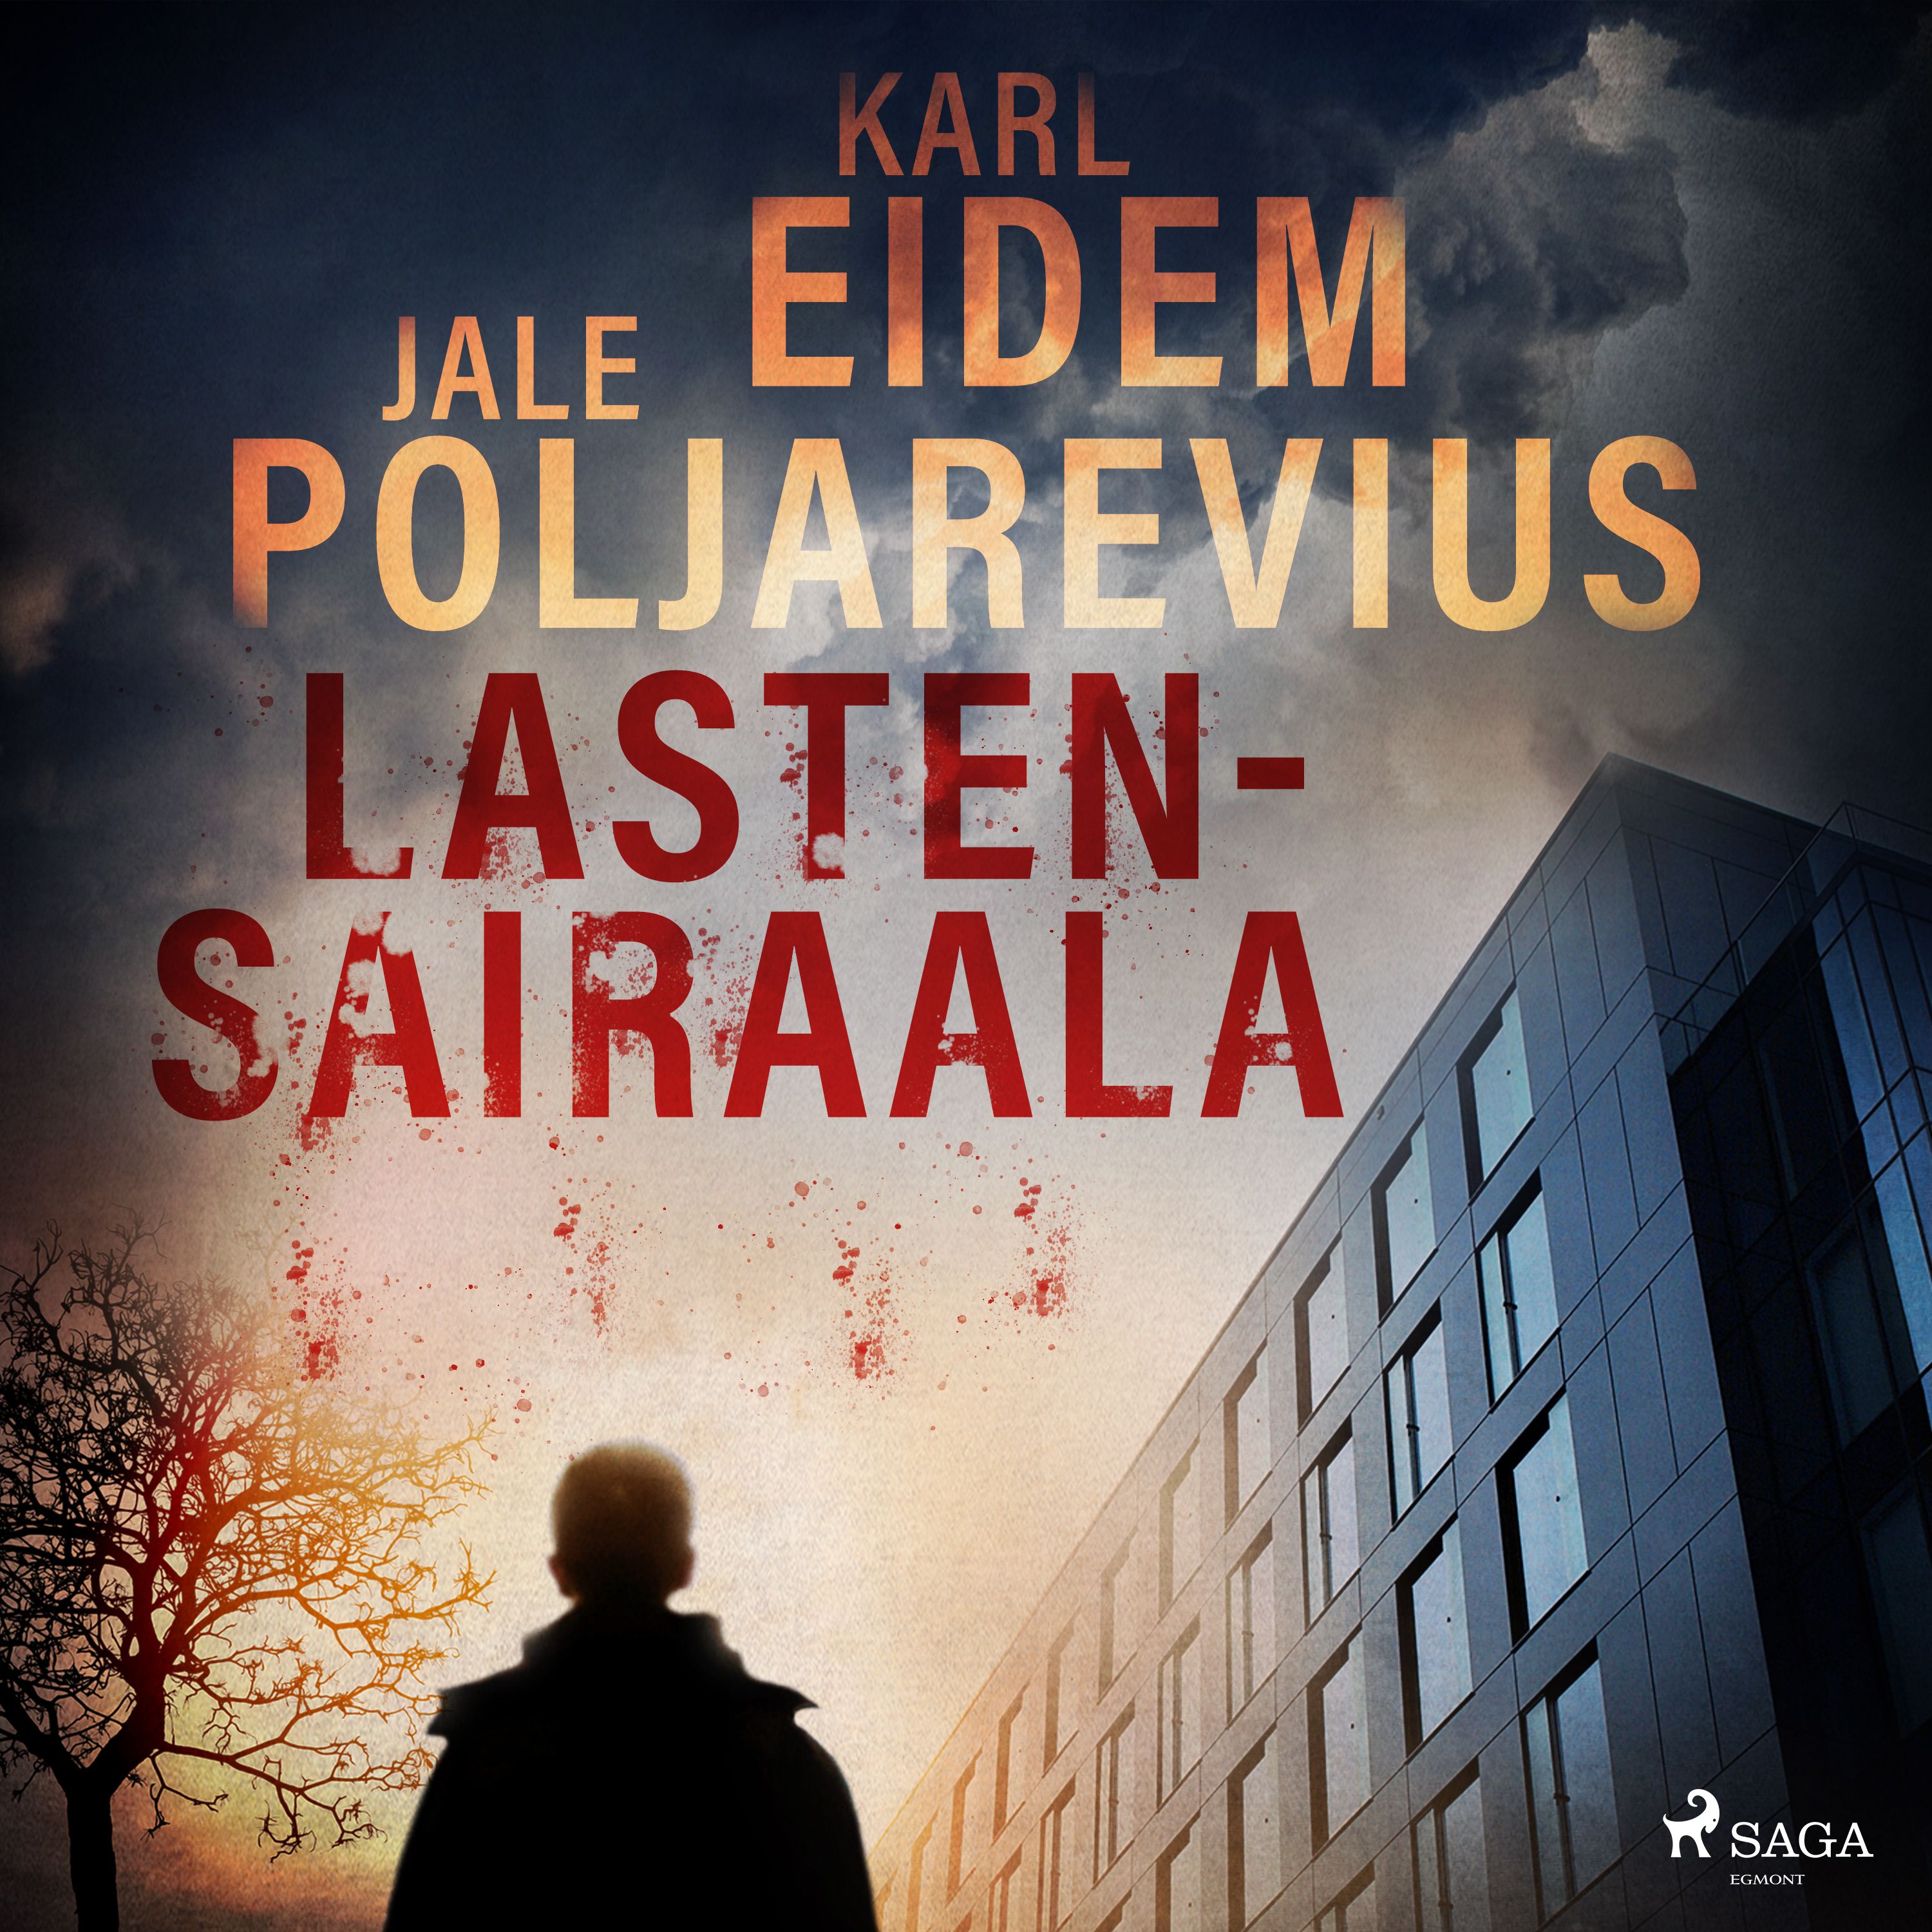 Lastensairaala, audiobook by Karl Eidem, Jale Poljarevius